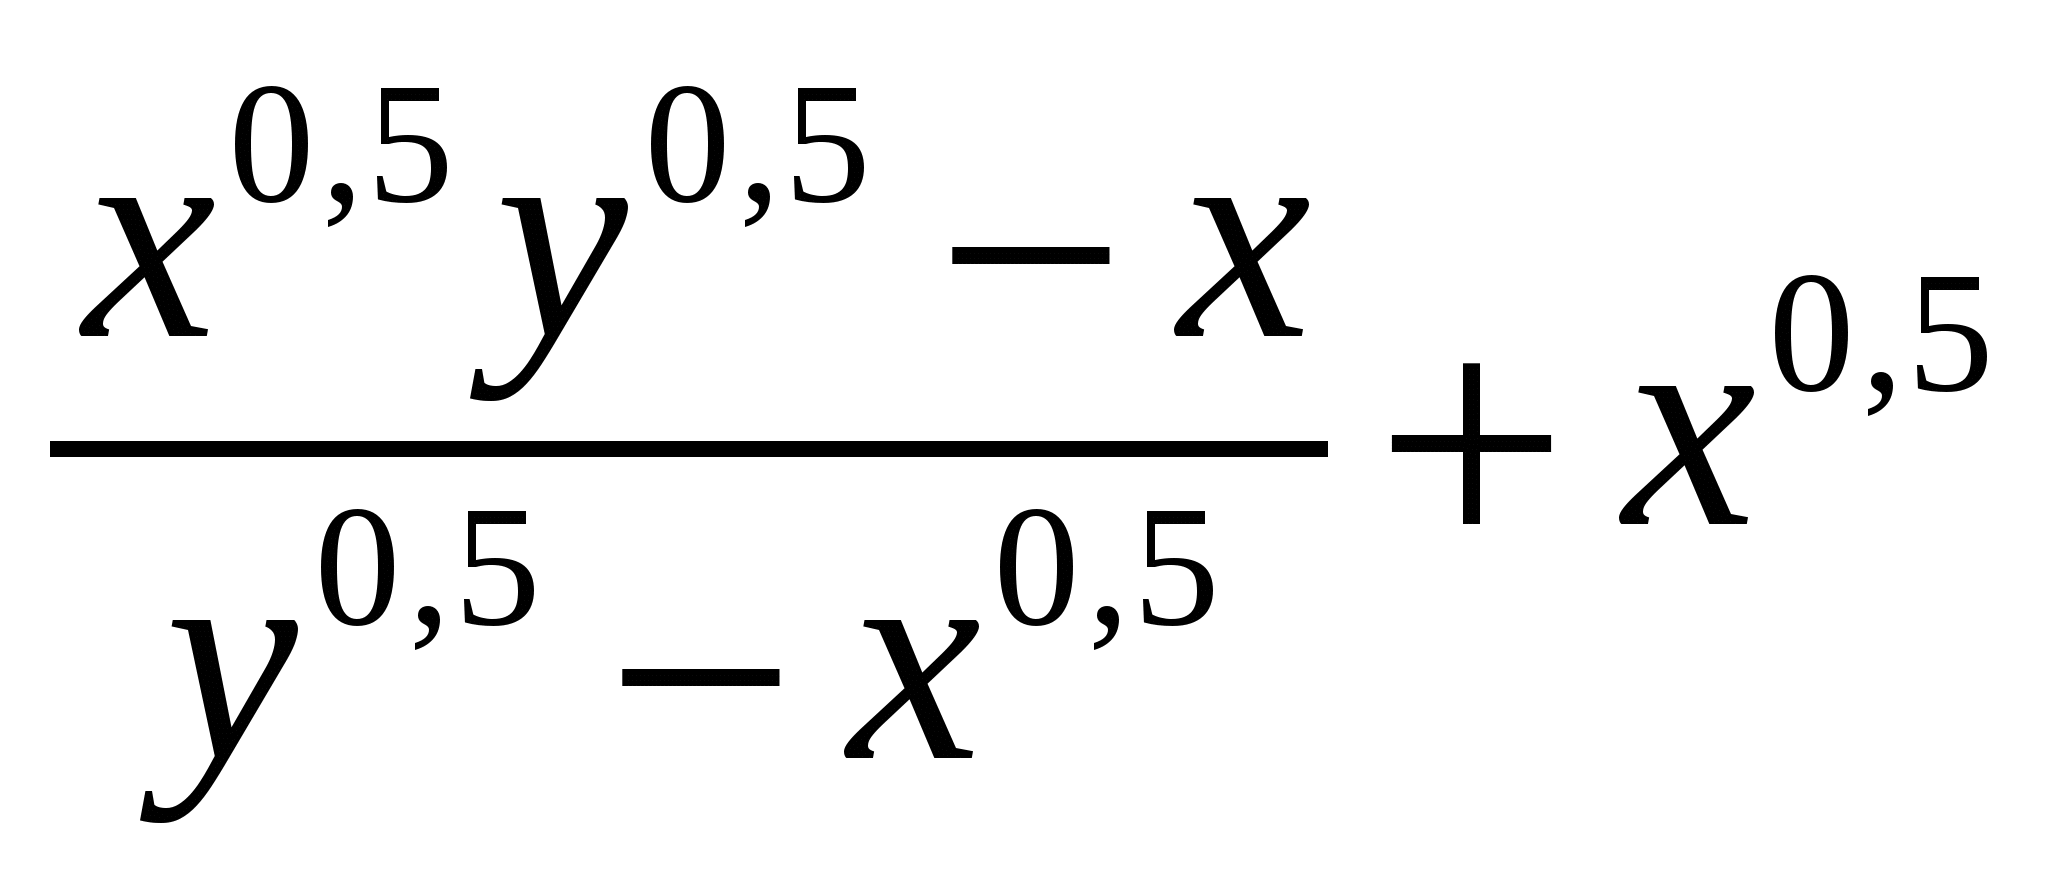 Предлагаются тематические тесты по пяти темам курса алгебры: 1) множество значений функции; 2) решение неравенств; 3) свойства степеней; 4) корень n-степени; 5) свойства логарифмов.